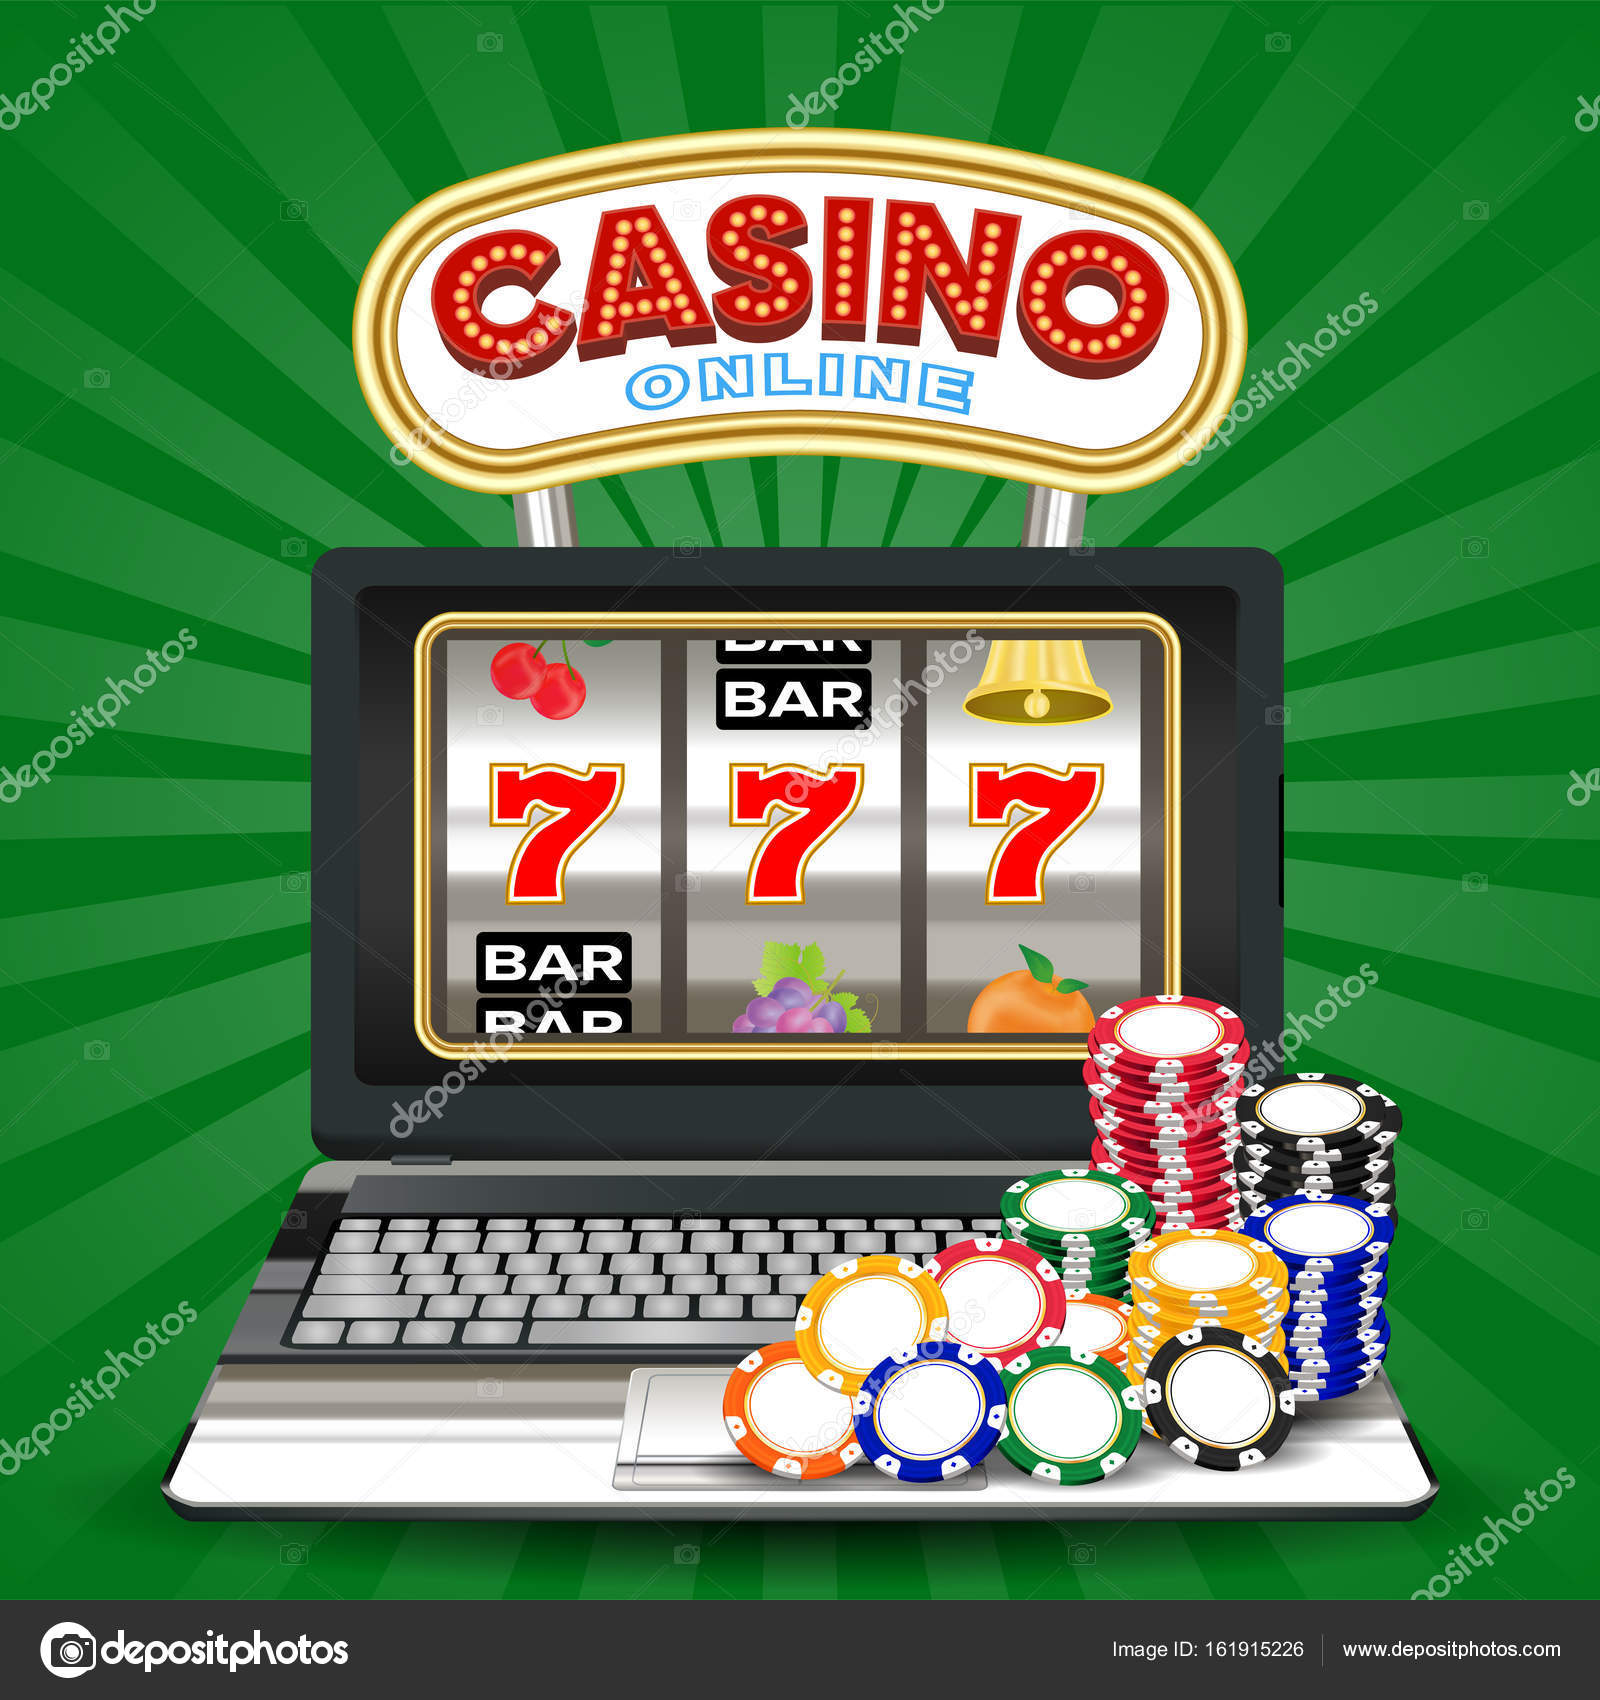 Is pin-up casino legit